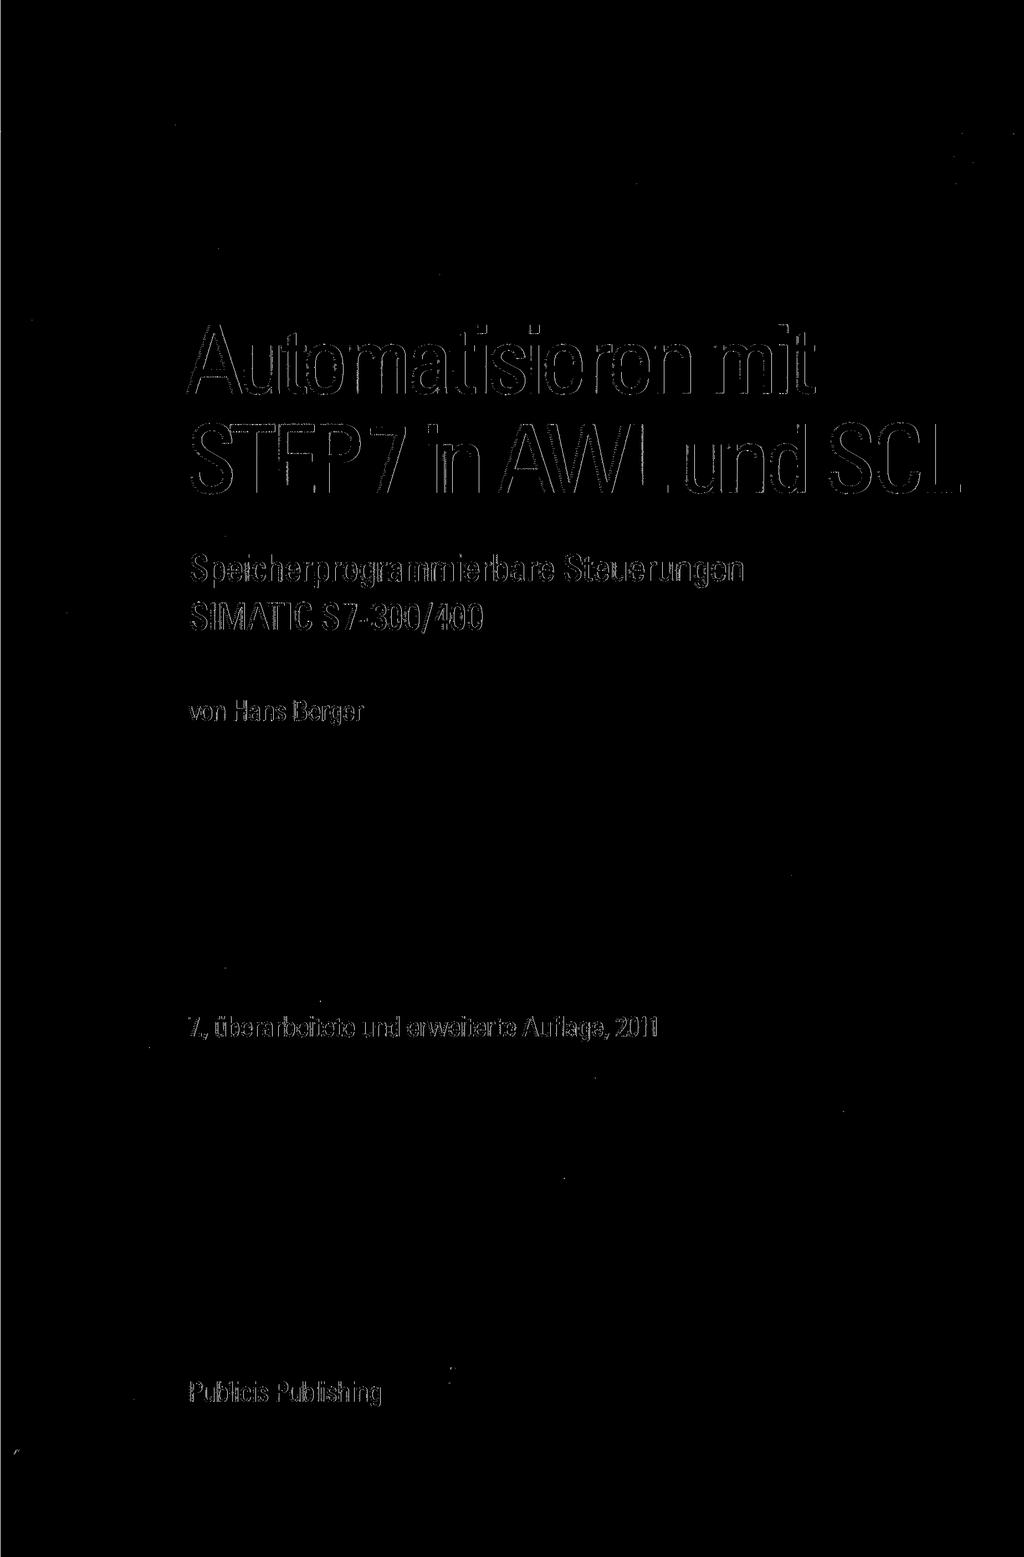 simatic s7 400 manual pdf